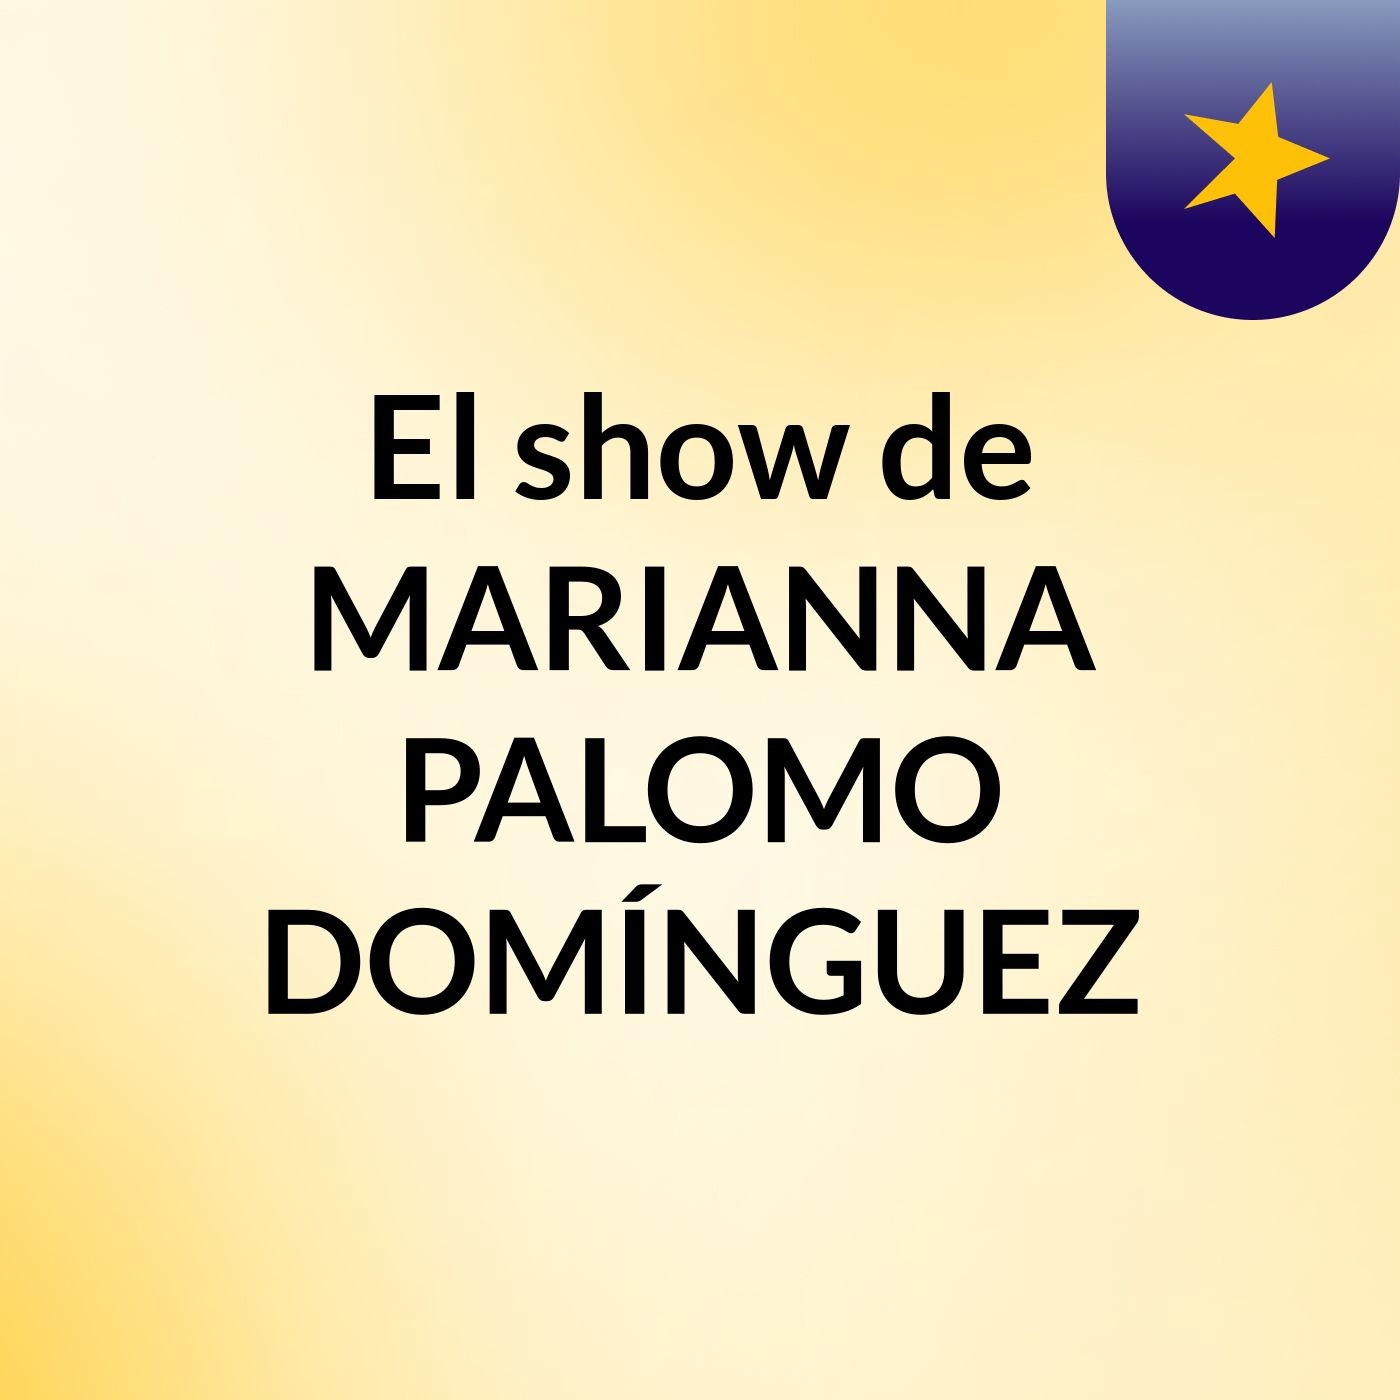 El show de MARIANNA PALOMO DOMÍNGUEZ